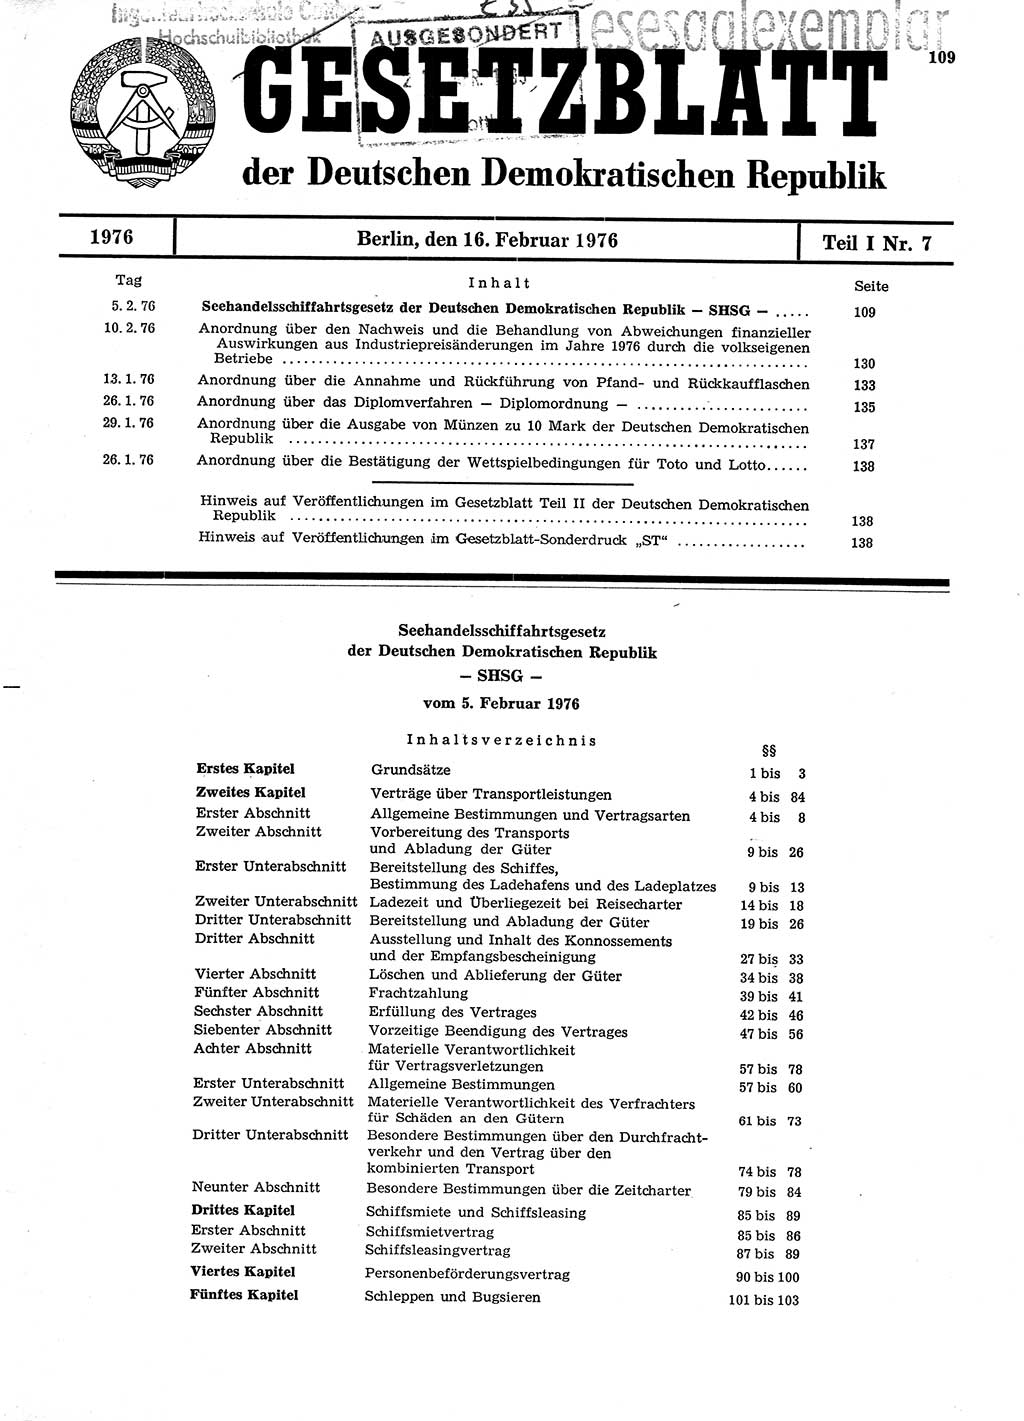 Gesetzblatt (GBl.) der Deutschen Demokratischen Republik (DDR) Teil Ⅰ 1976, Seite 109 (GBl. DDR Ⅰ 1976, S. 109)